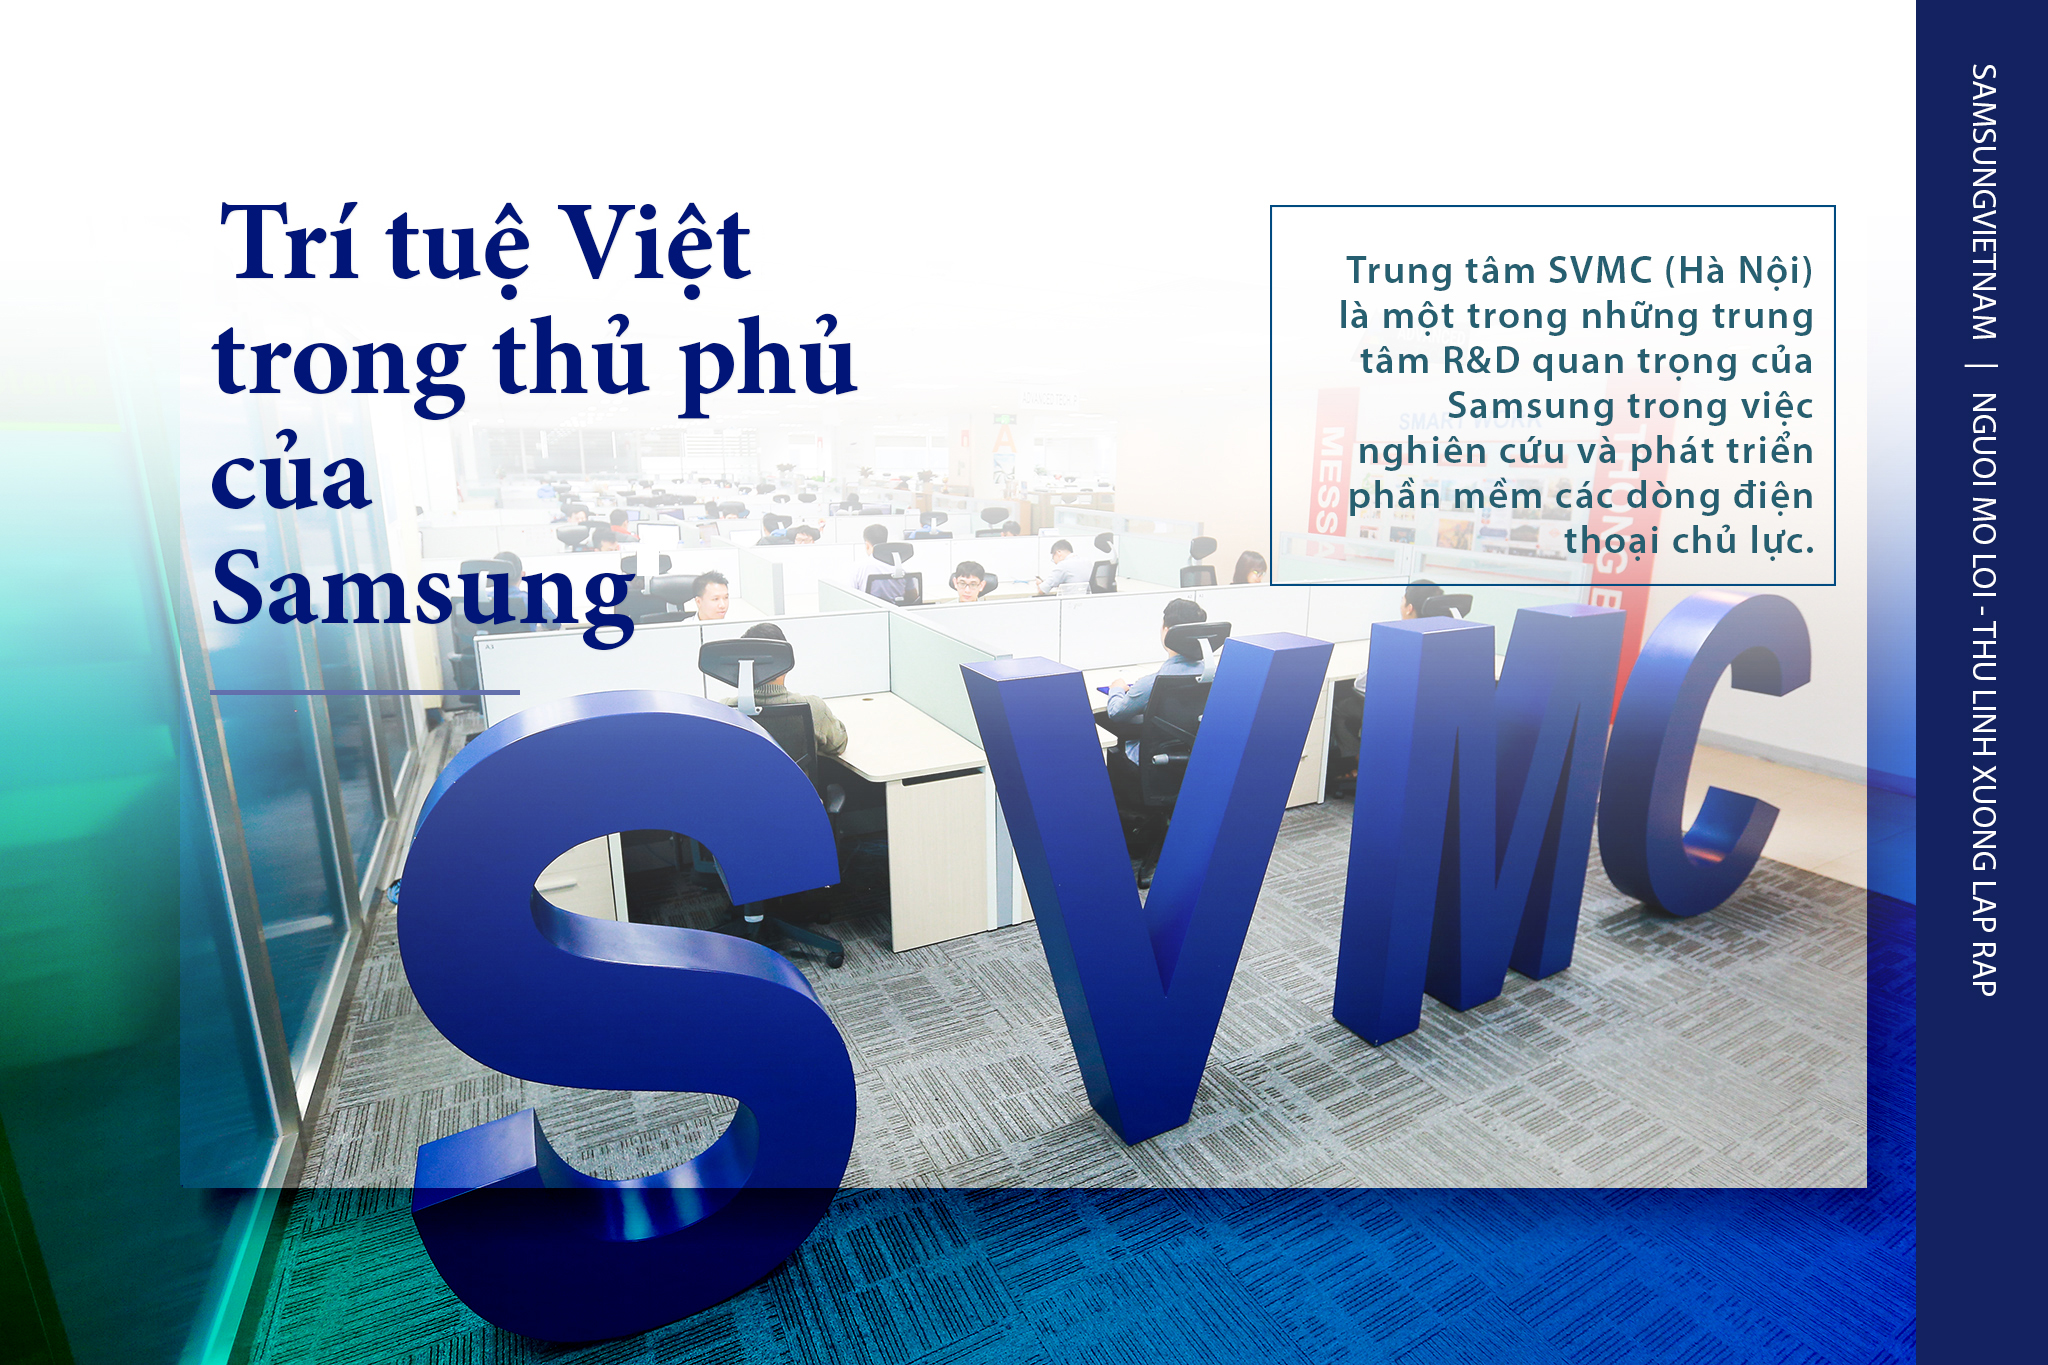 Trí tuệ Việt trong ‘thủ phủ’ nghiên cứu của Samsung